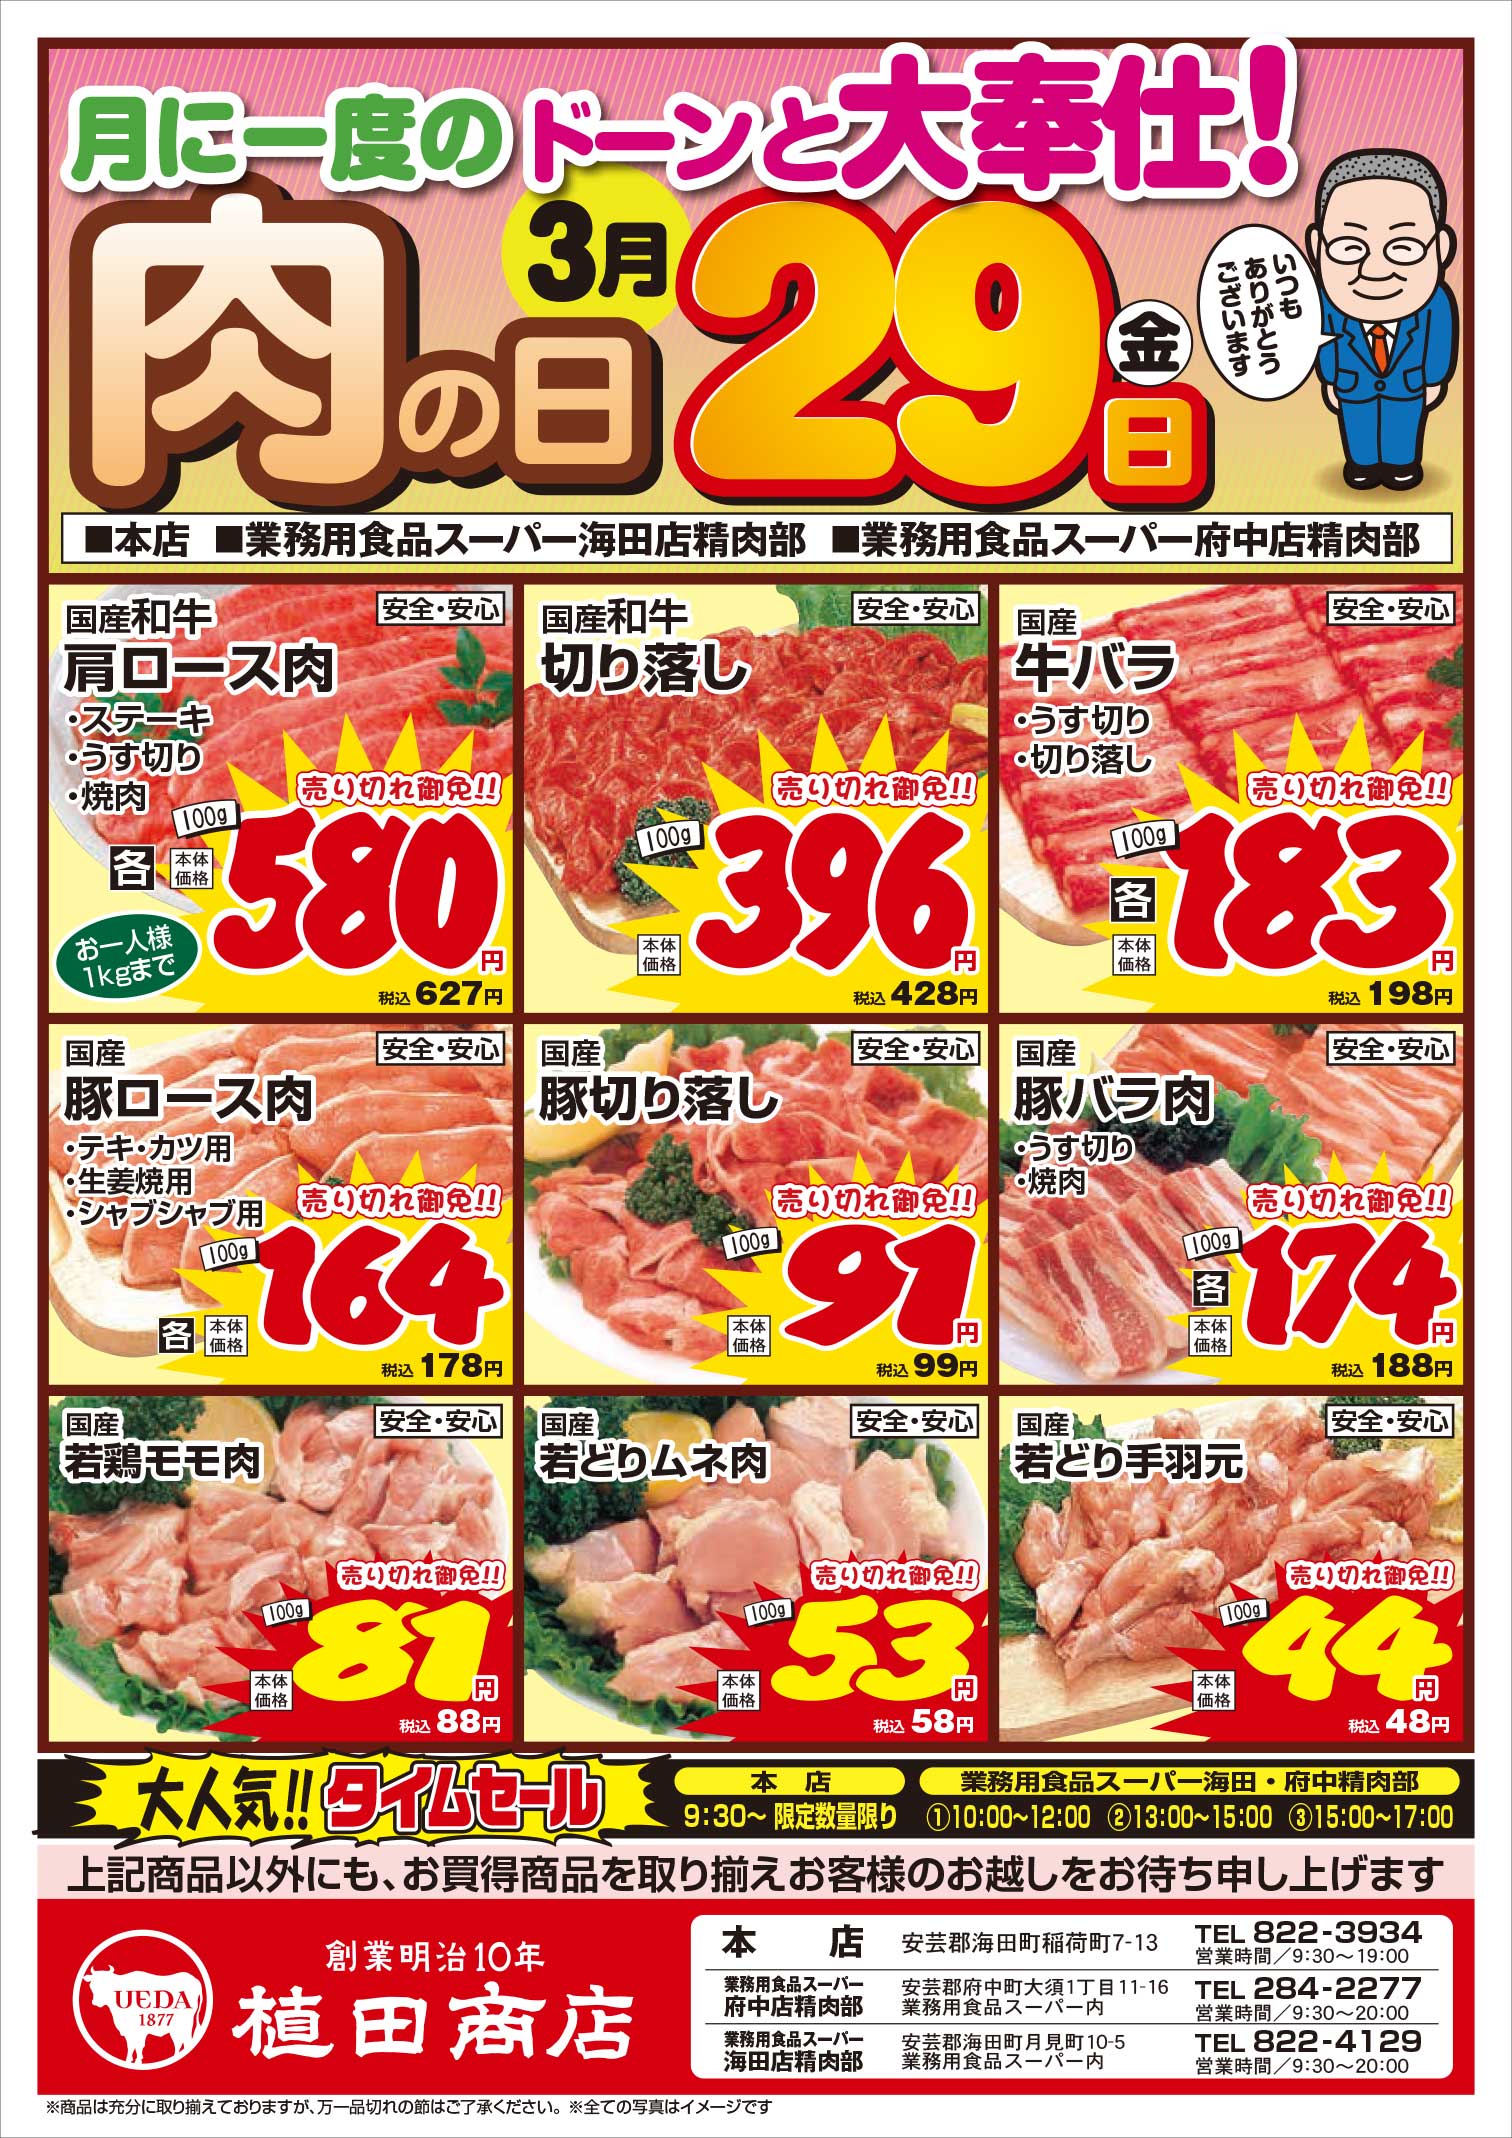 業務用食品スーパー海田精肉部 3/29 肉の日セールチラシオモテ